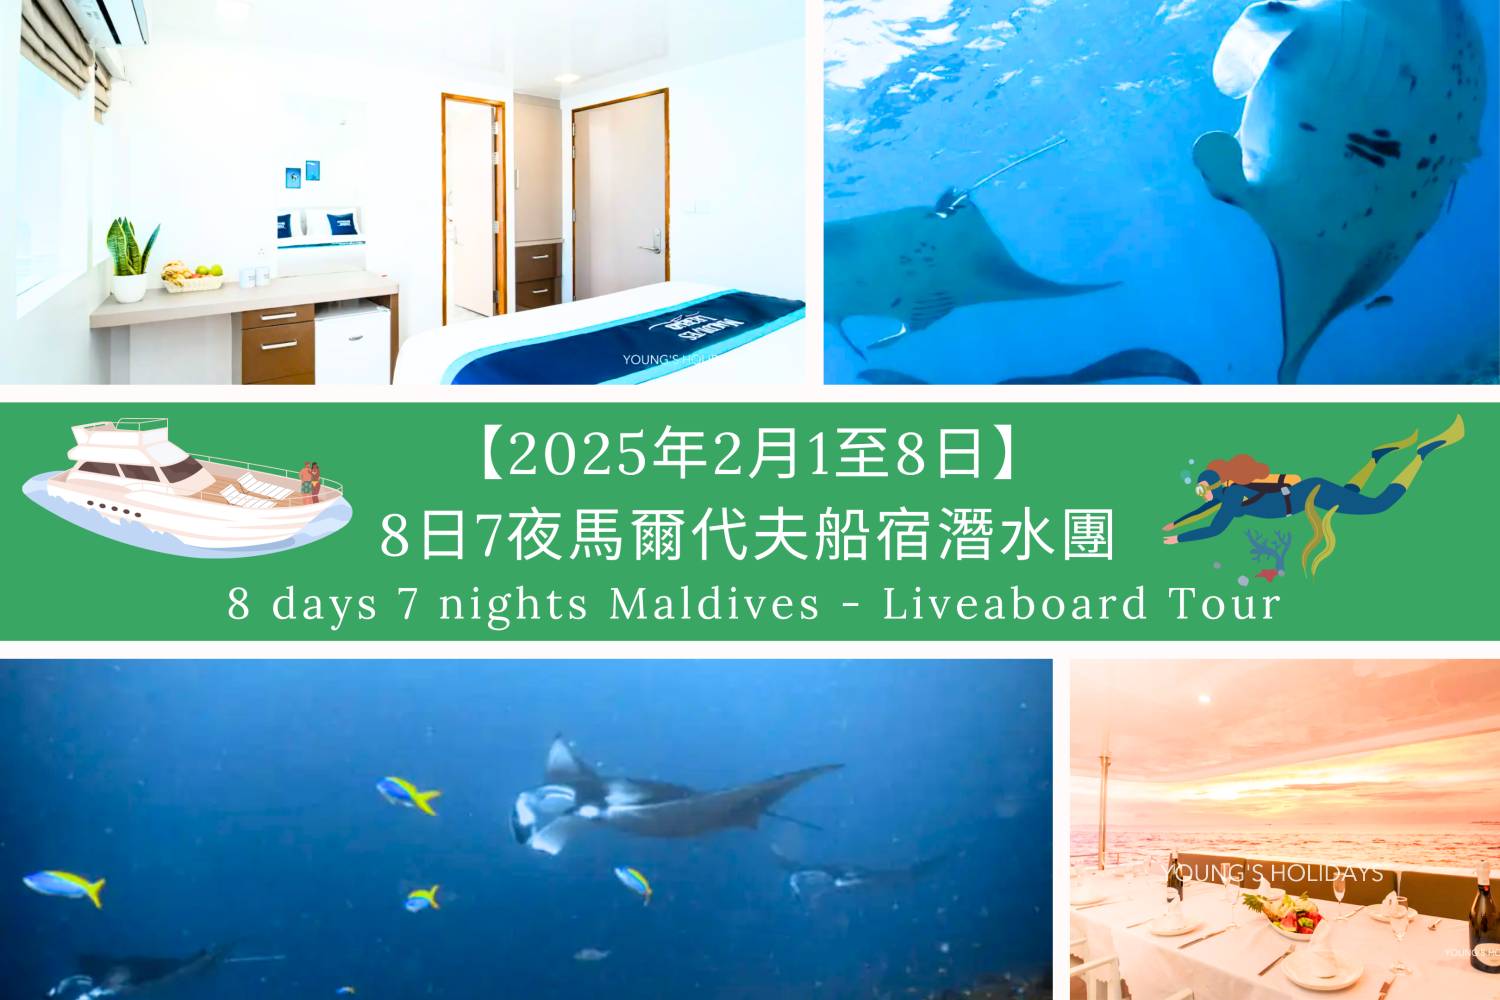 【馬爾代夫】2025年2月1至8日 －8日7夜 Maldives 馬爾代夫船宿潛水團(隨團教練-Berry )年初四出發！